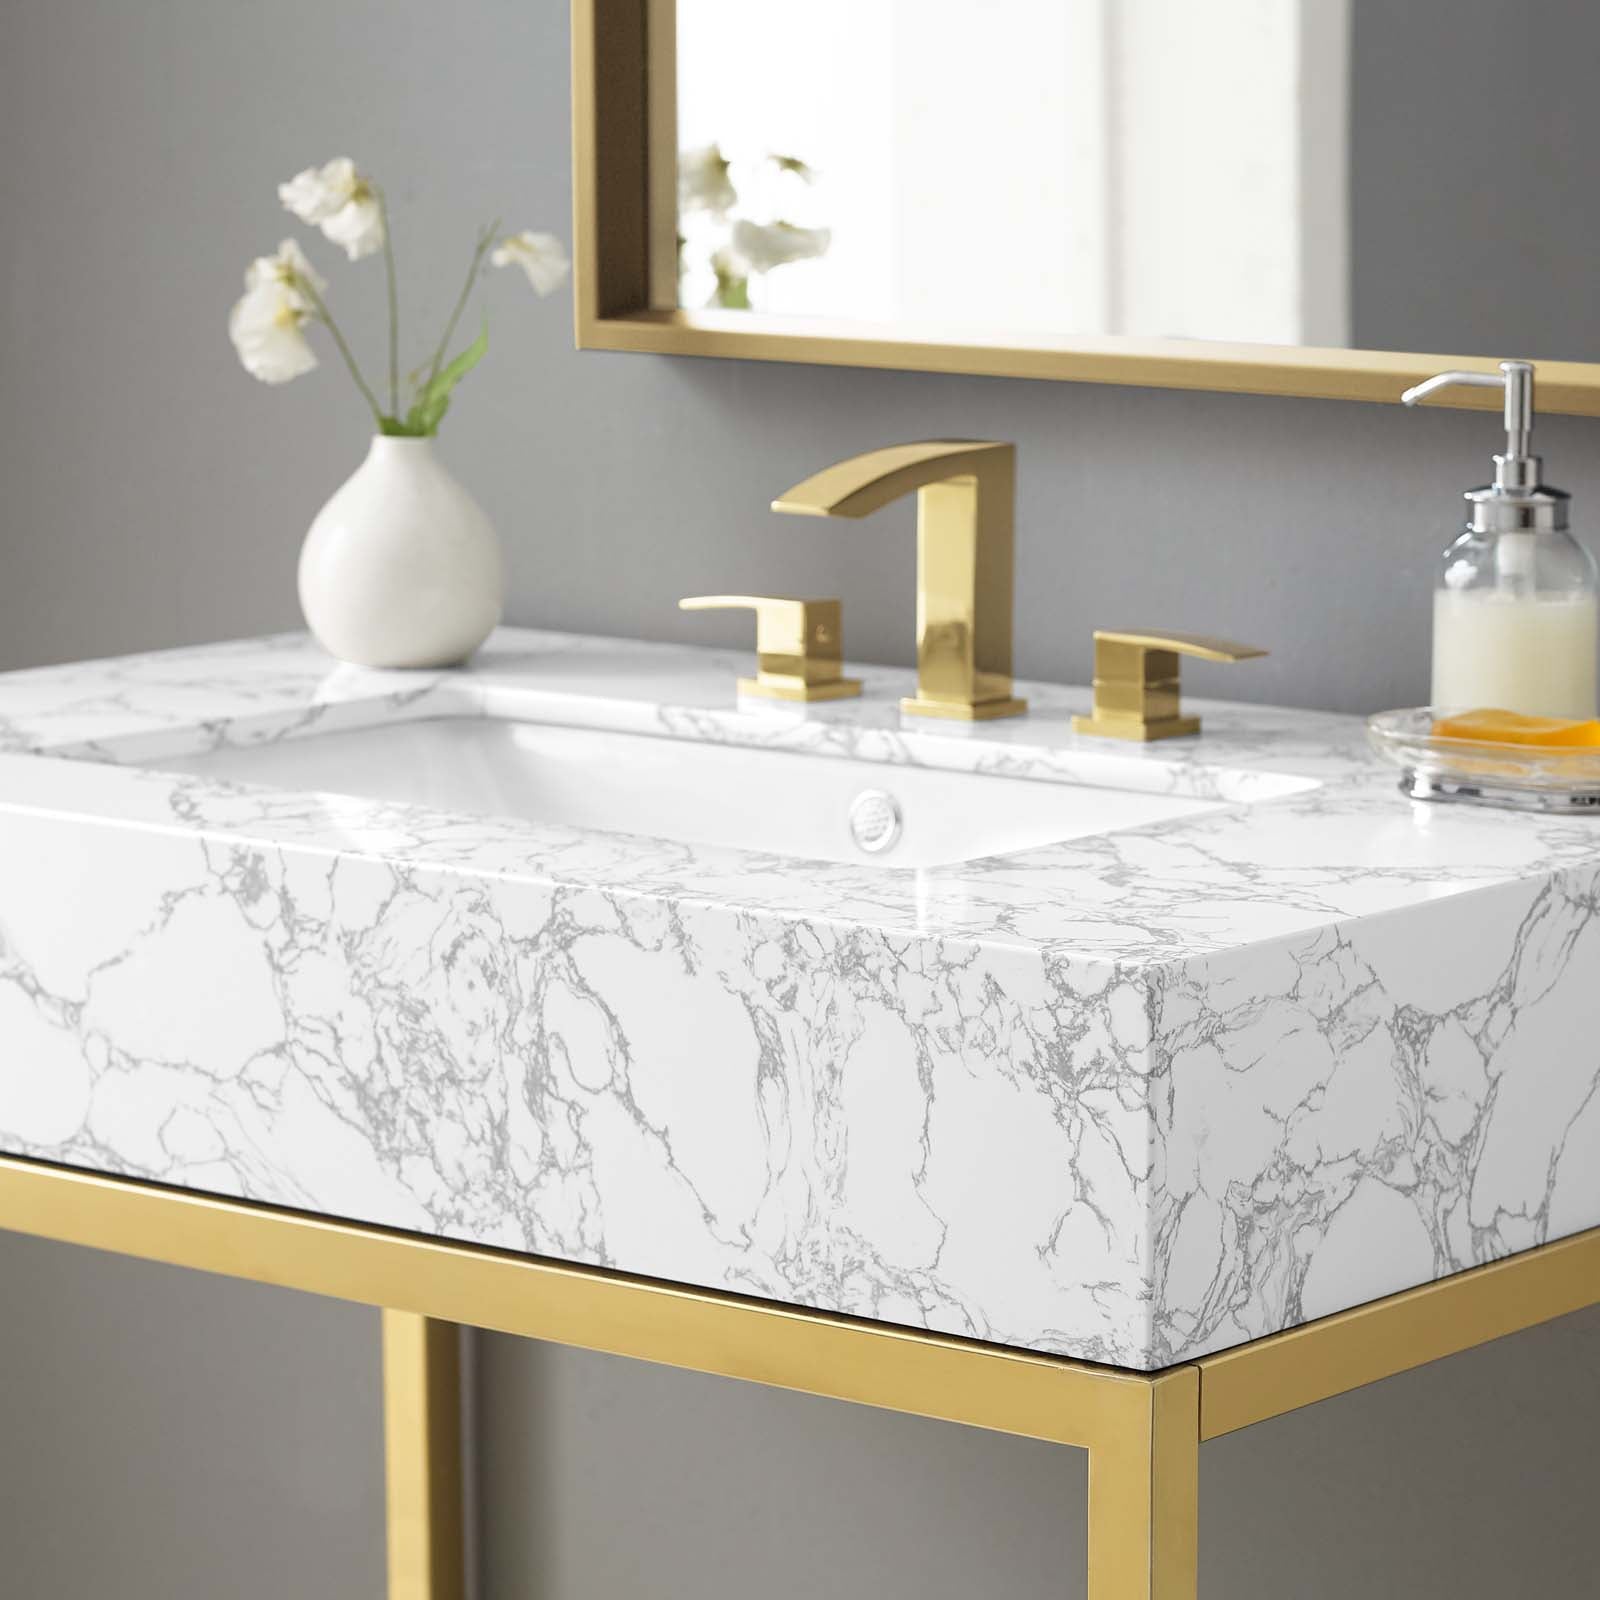 Modway Bathroom Vanity - Kingsley 36" Gold Stainless Steel Bathroom Vanity Gold White